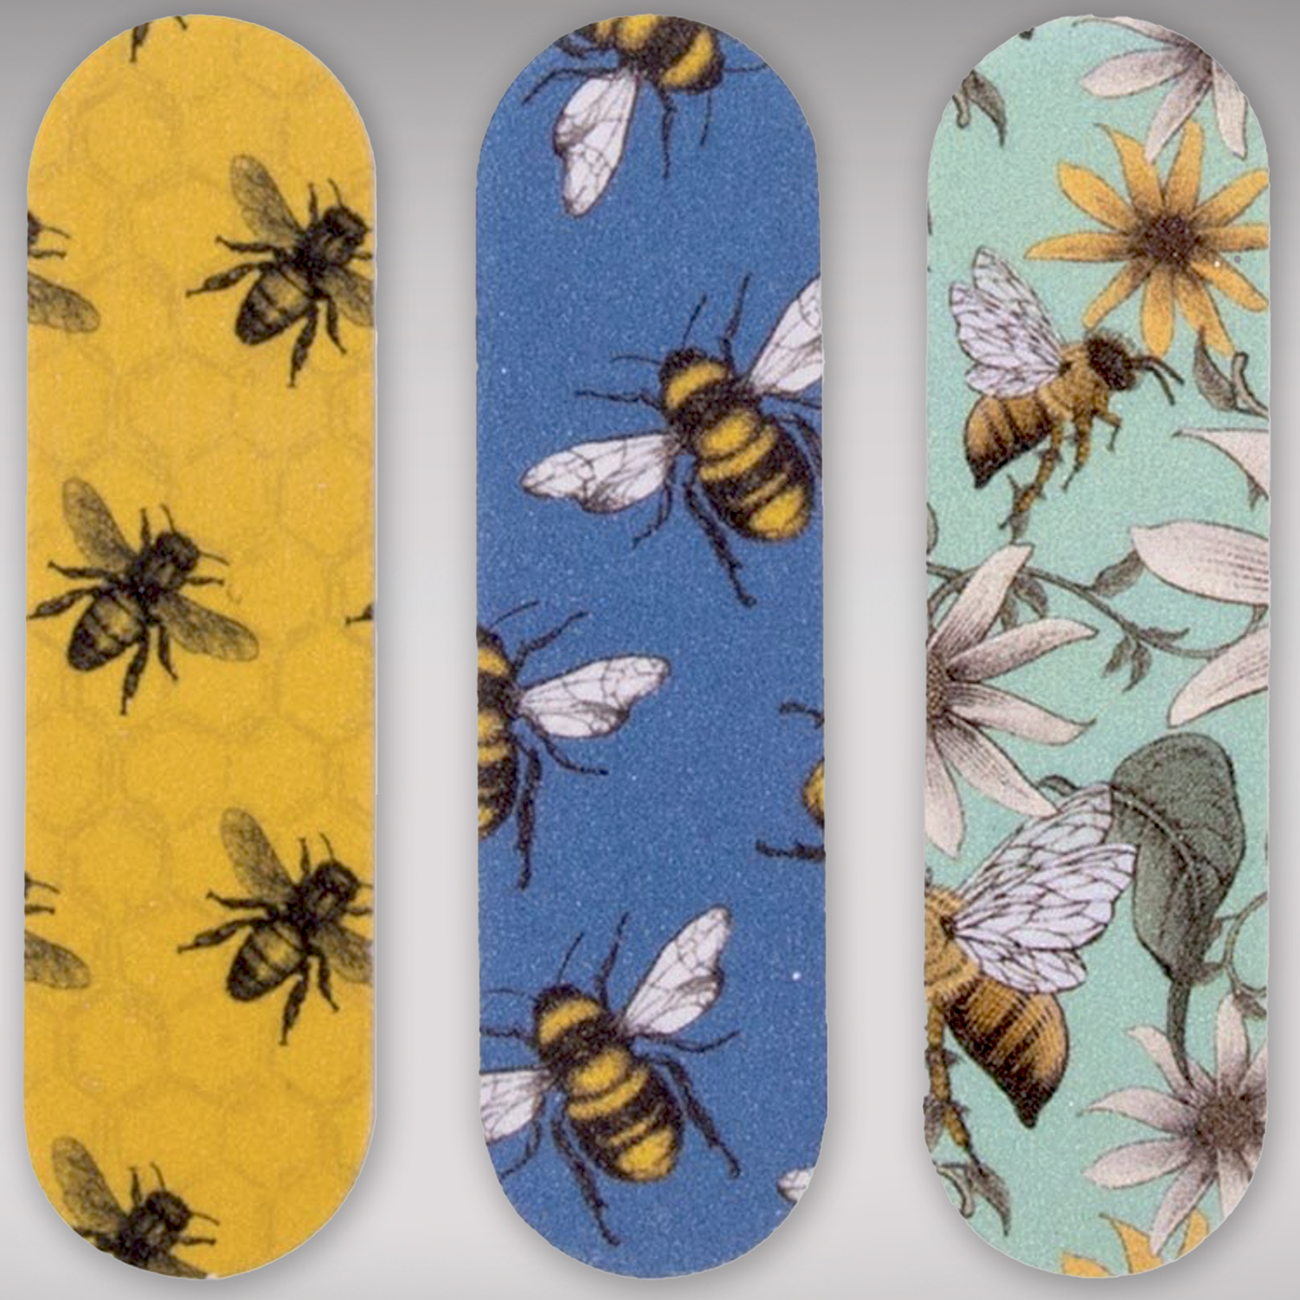 Bee Nail Files - Set of 6